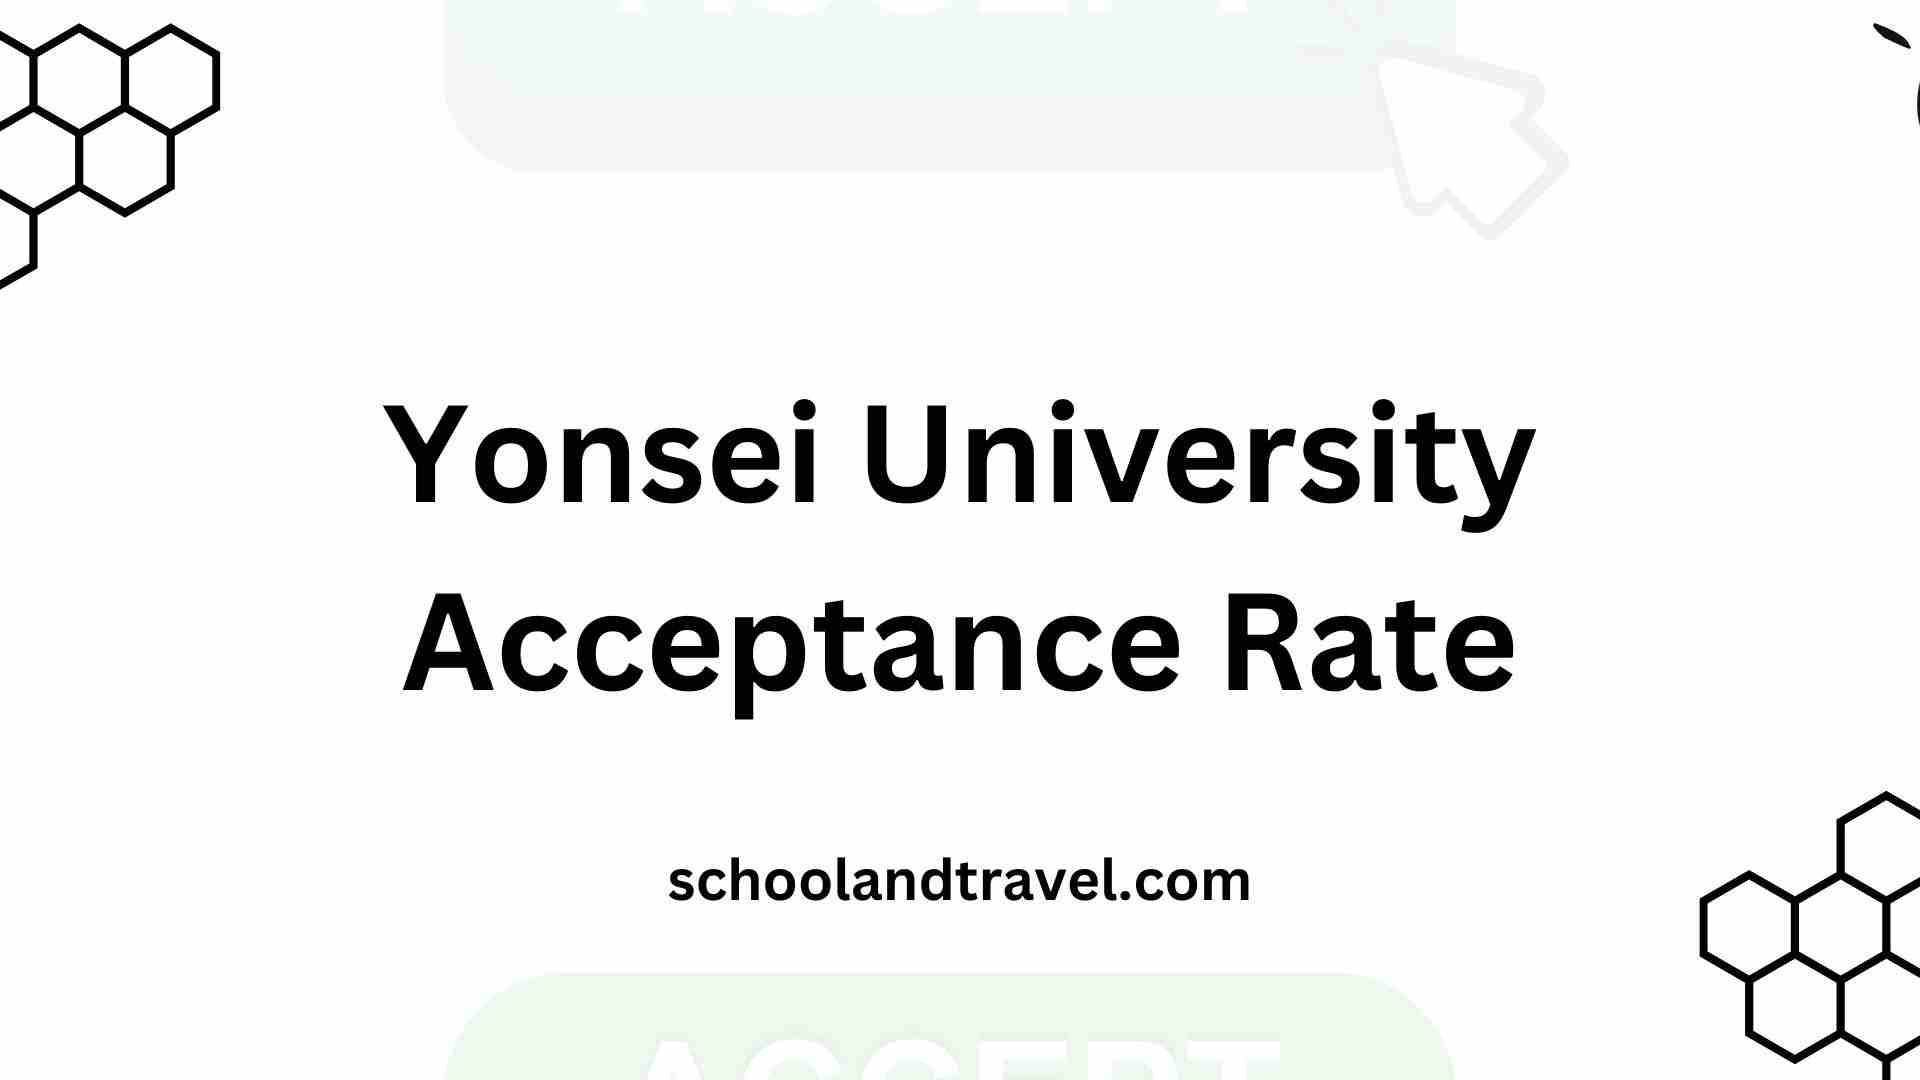 Yonsei University Acceptance Rate